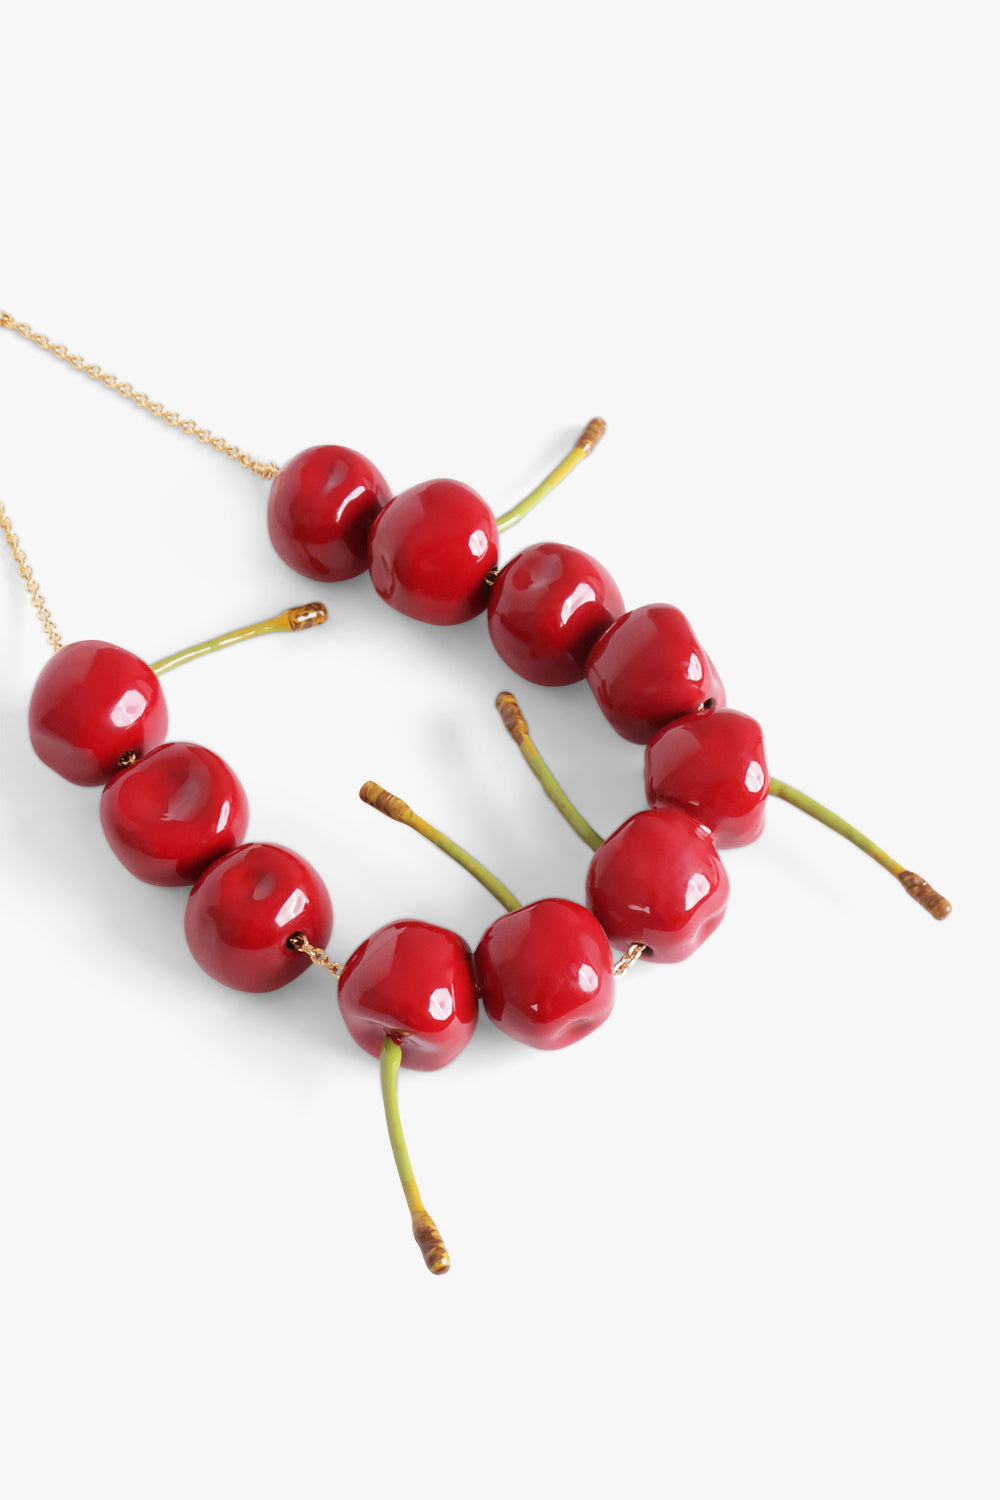 jacquemus jewellery le collier cerise necklace cherry 31885487833169